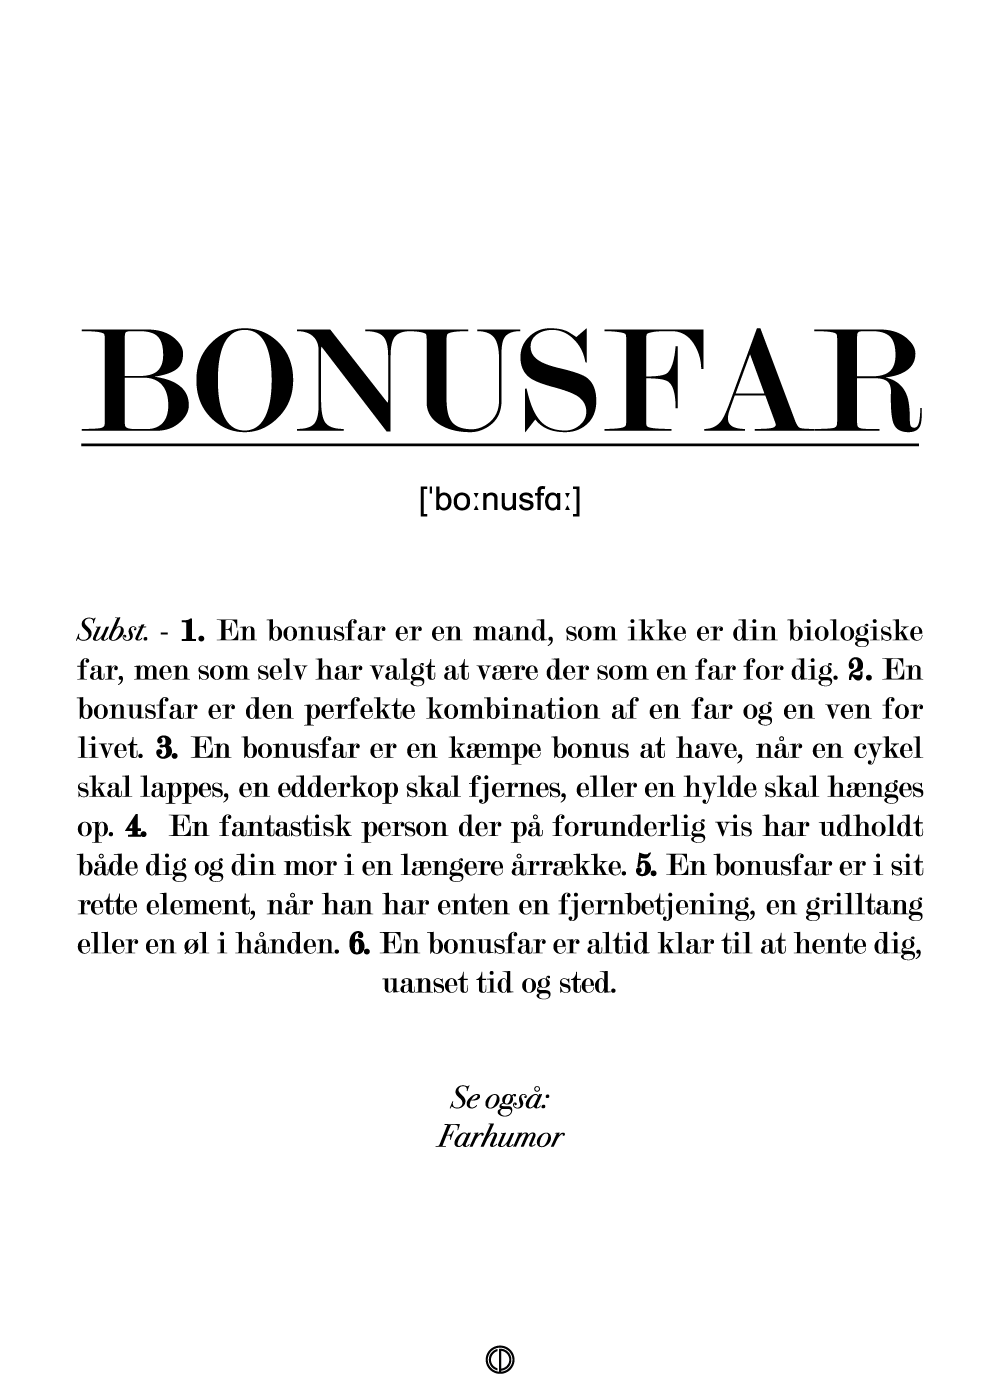 Bonusfar definition – –